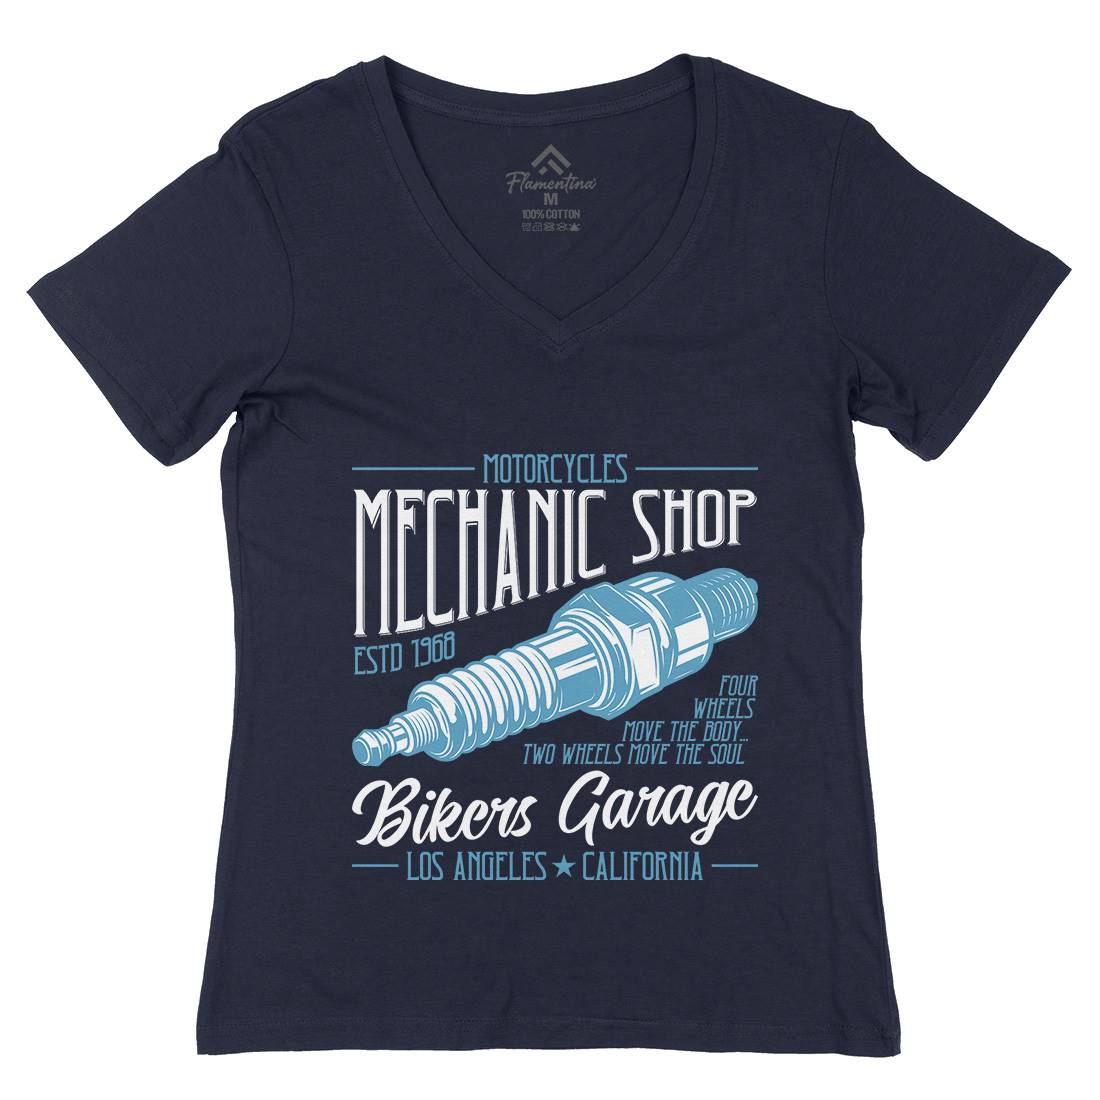 Mechanic Shop Womens Organic V-Neck T-Shirt Motorcycles B836